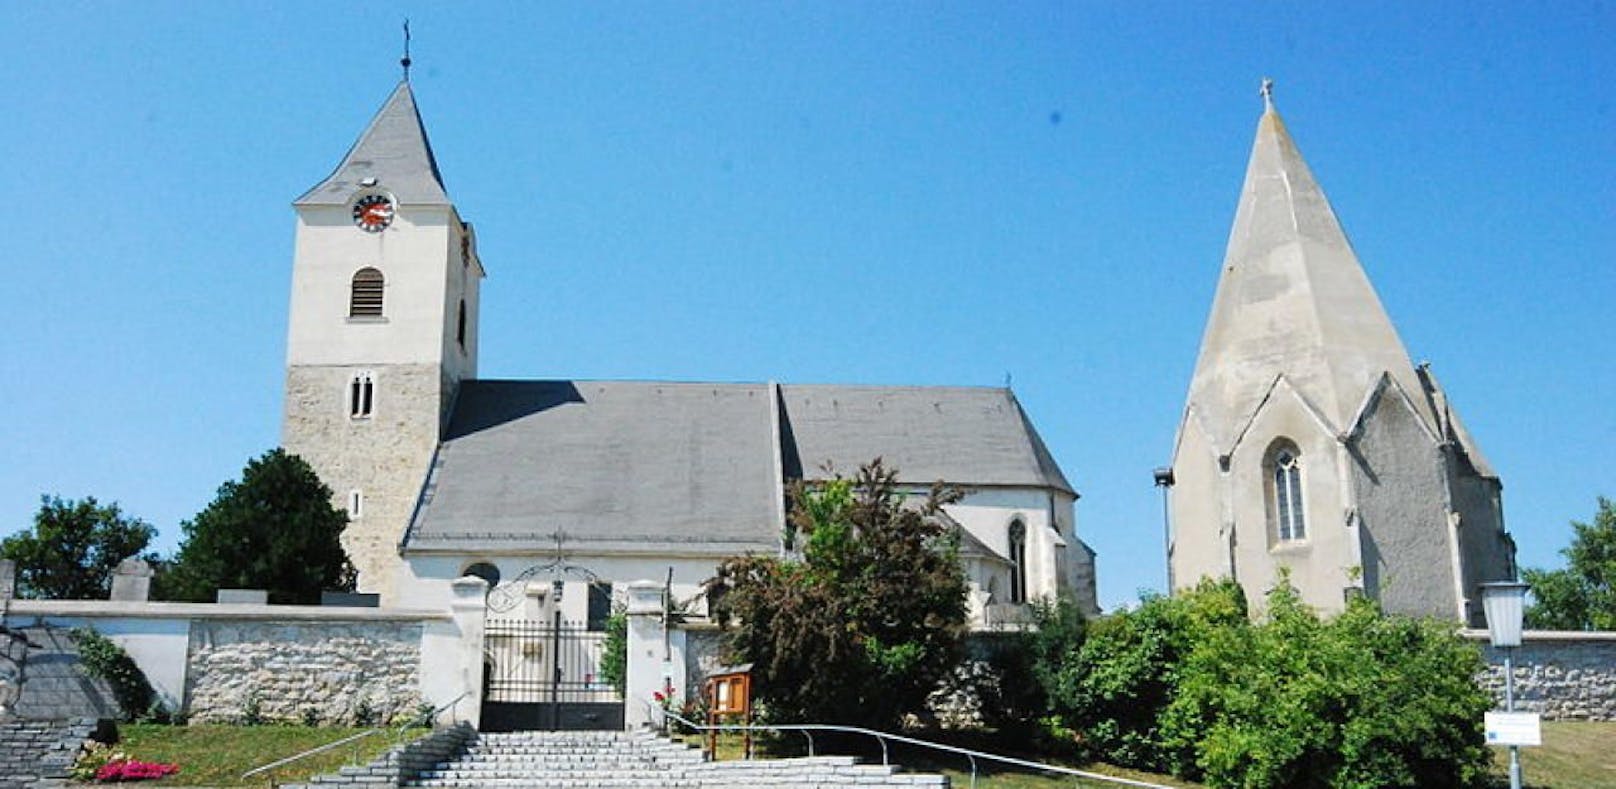 Die Kirche in Zellerndorf wurde bestohlen.